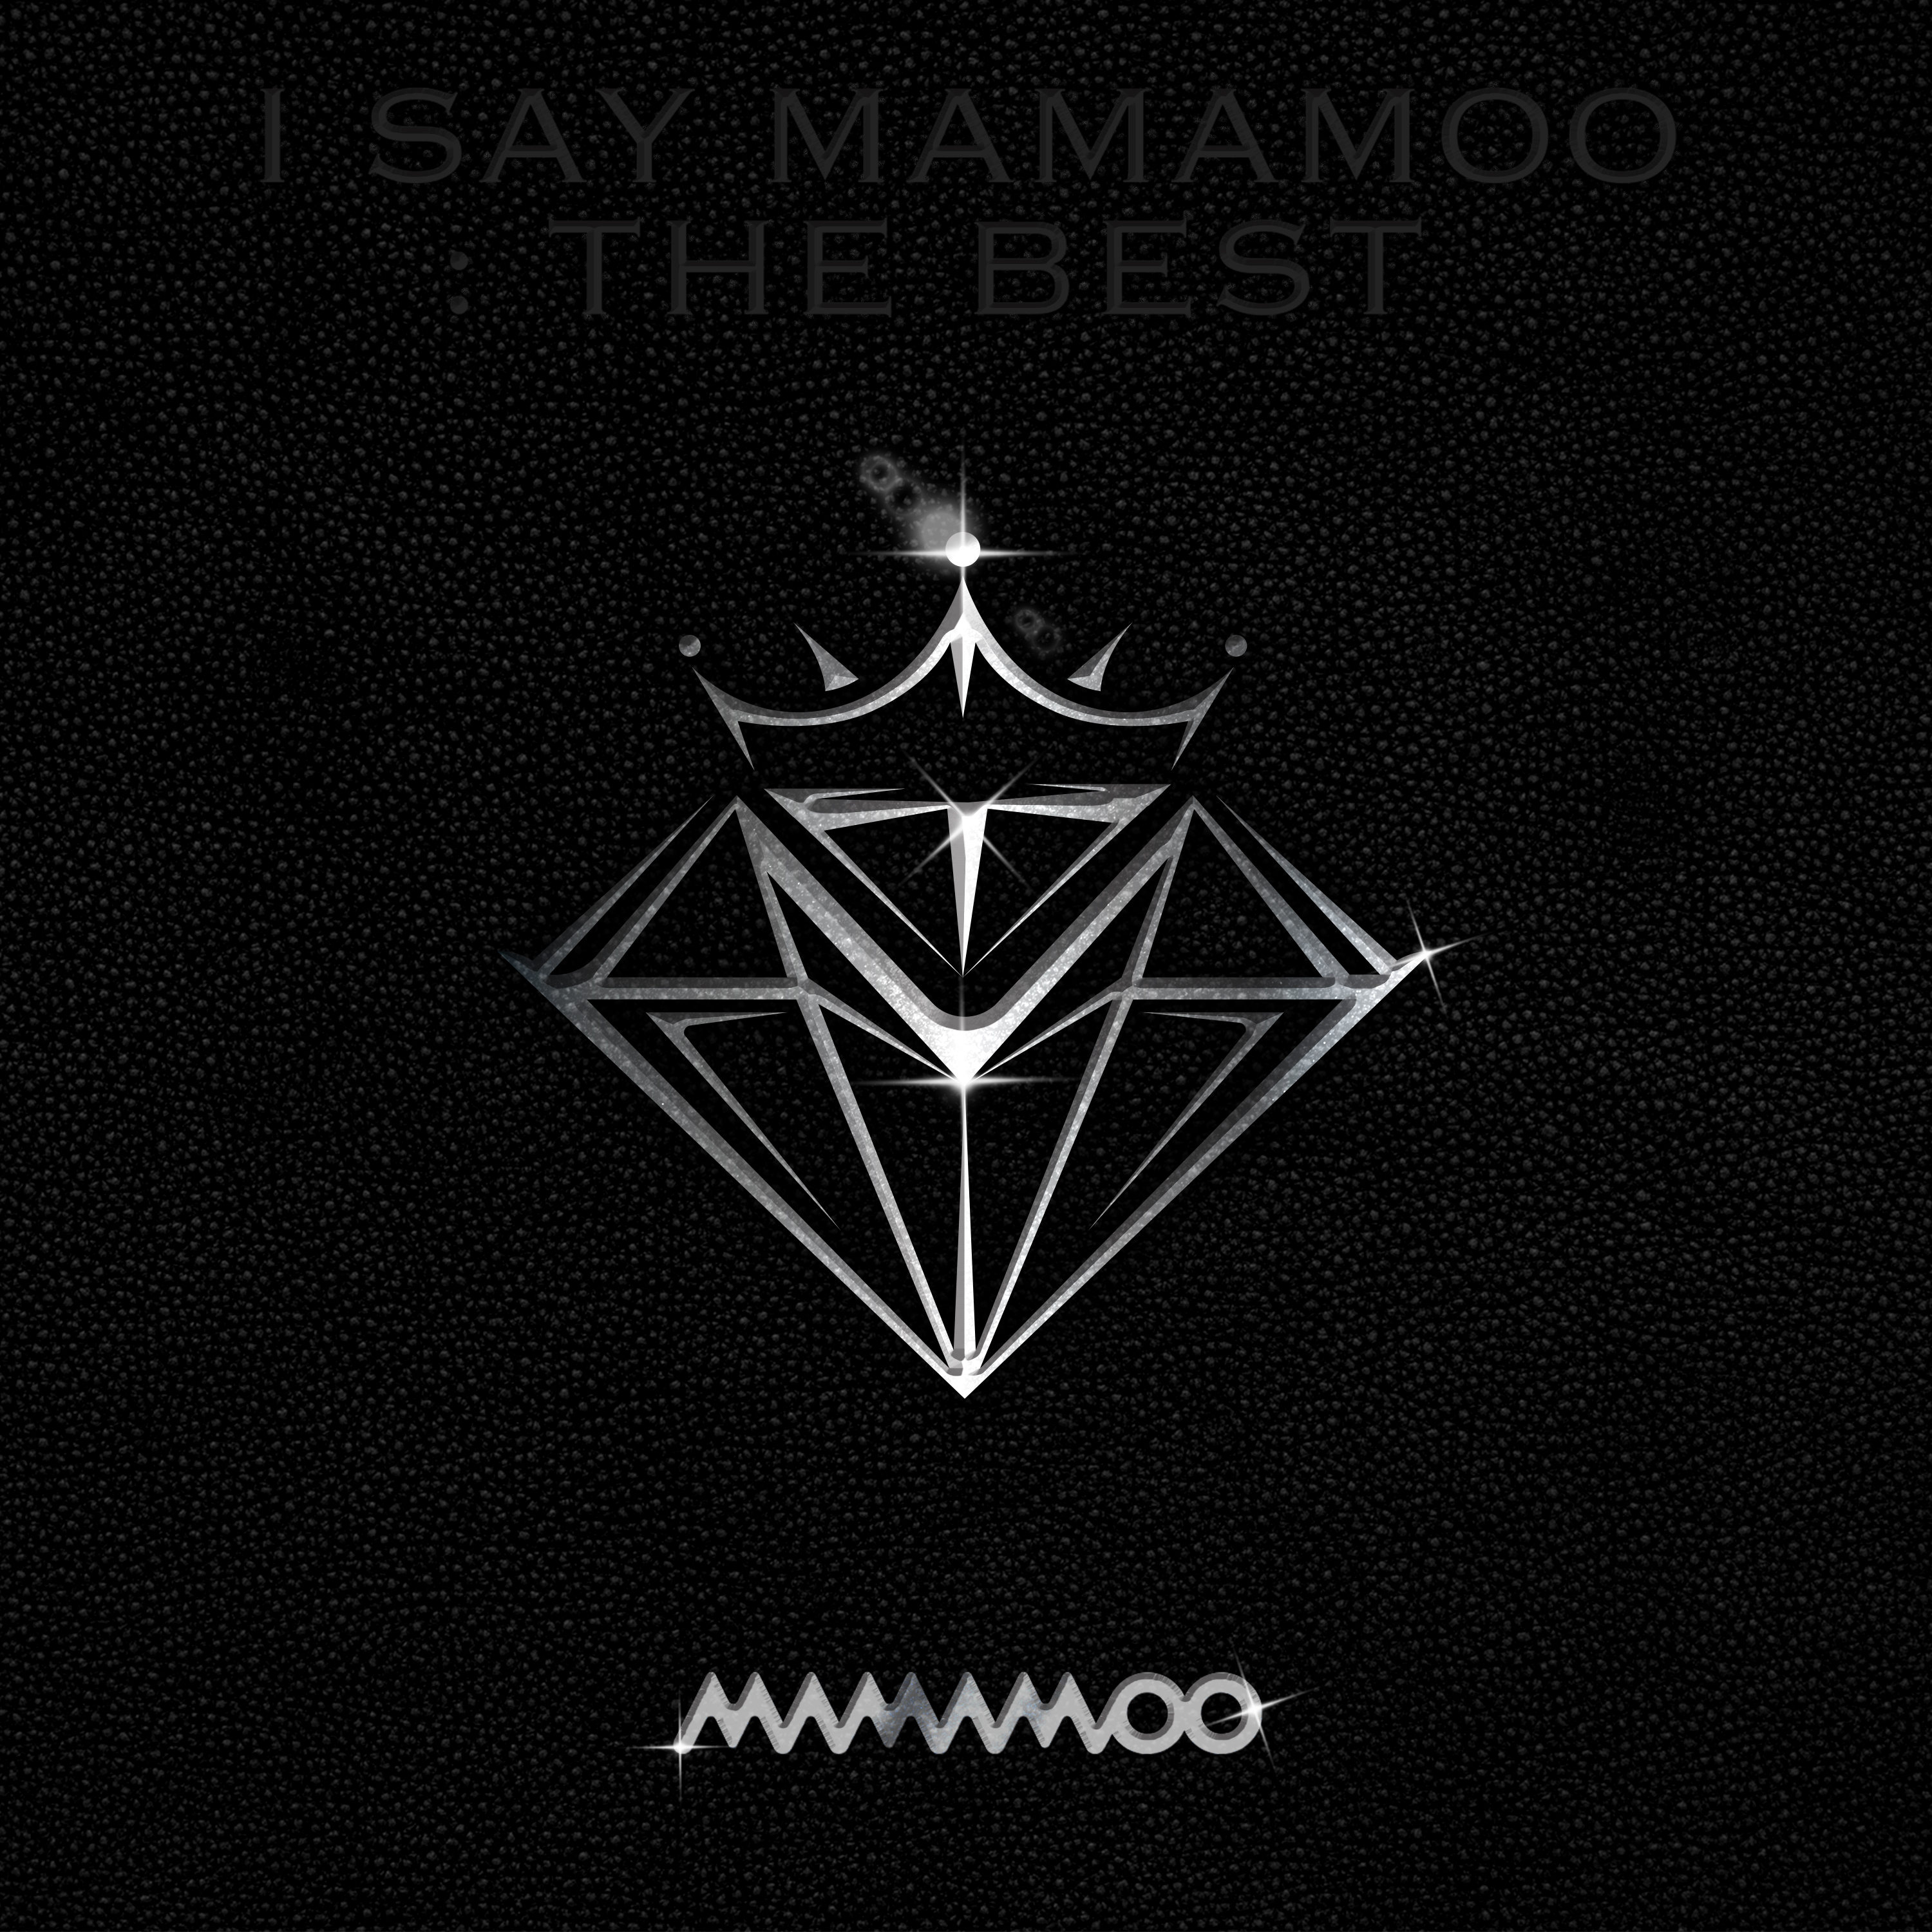 Logo do álbum I say Mamamoo: the best.